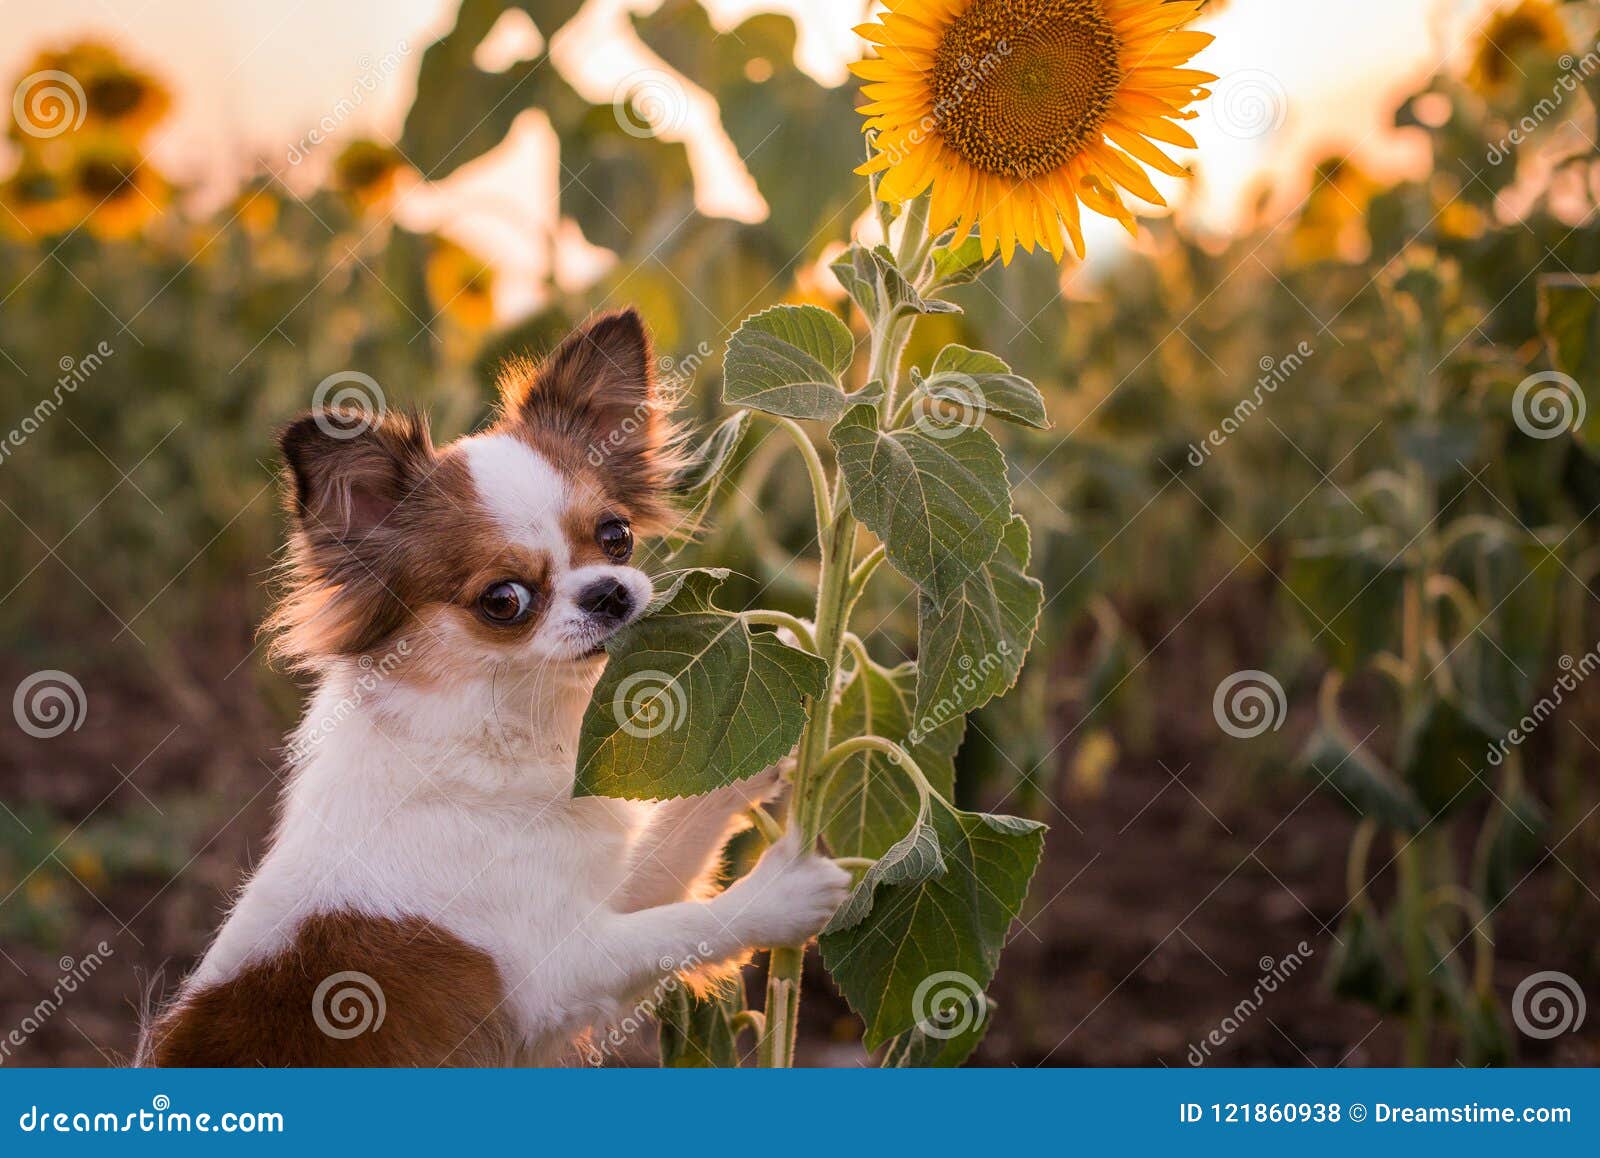 摆在向日葵前面的狗 库存图片. 图片 包括有 似犬, 特写镜头, 摆在, 斯塔福郡, 绿色, 哺乳动物, 逗人喜爱 - 76375413